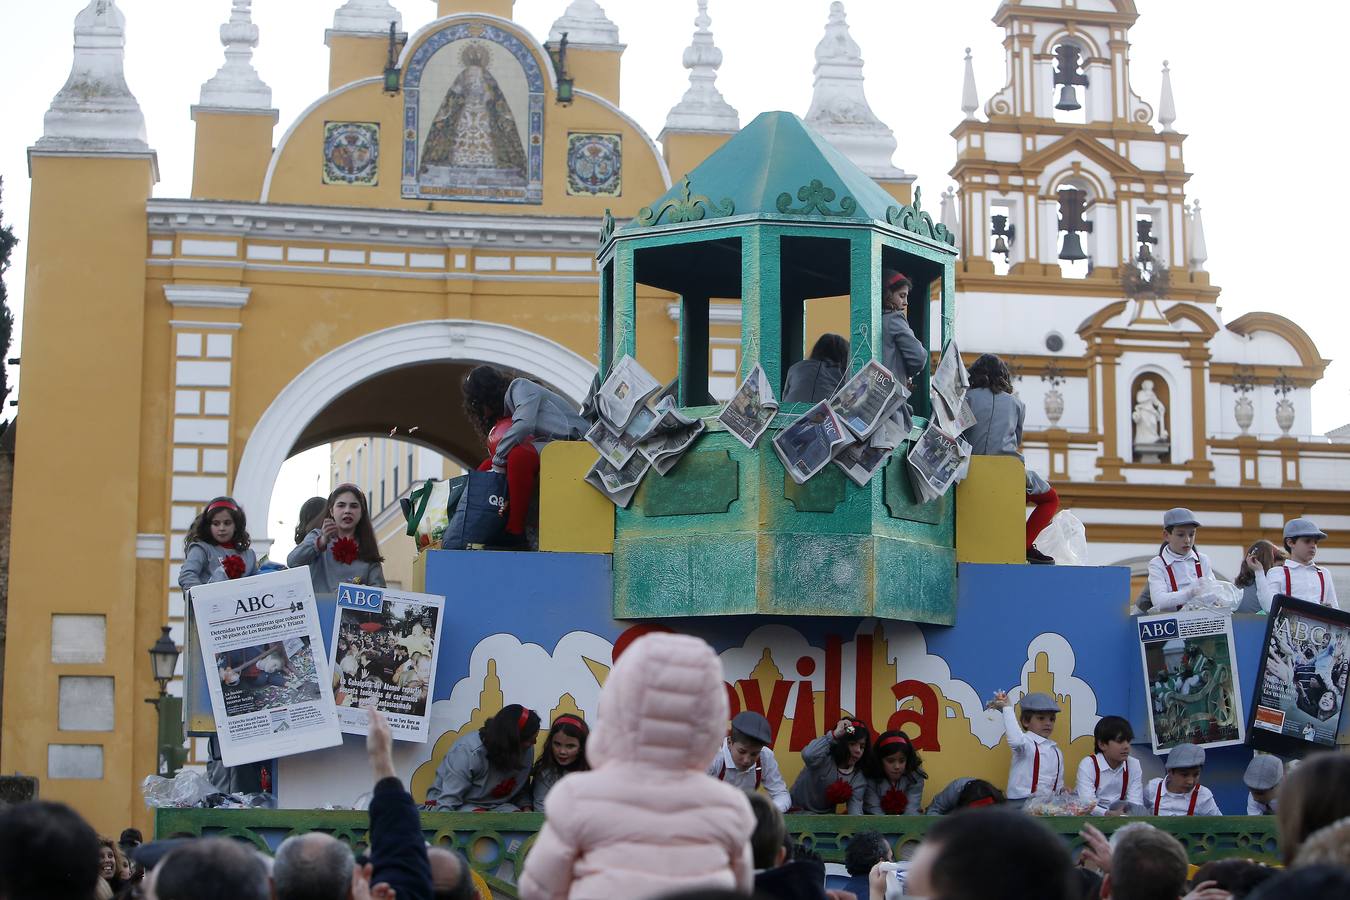 Los mejores momentos de la Cabalgata de Reyes Magos 2019 de Sevilla